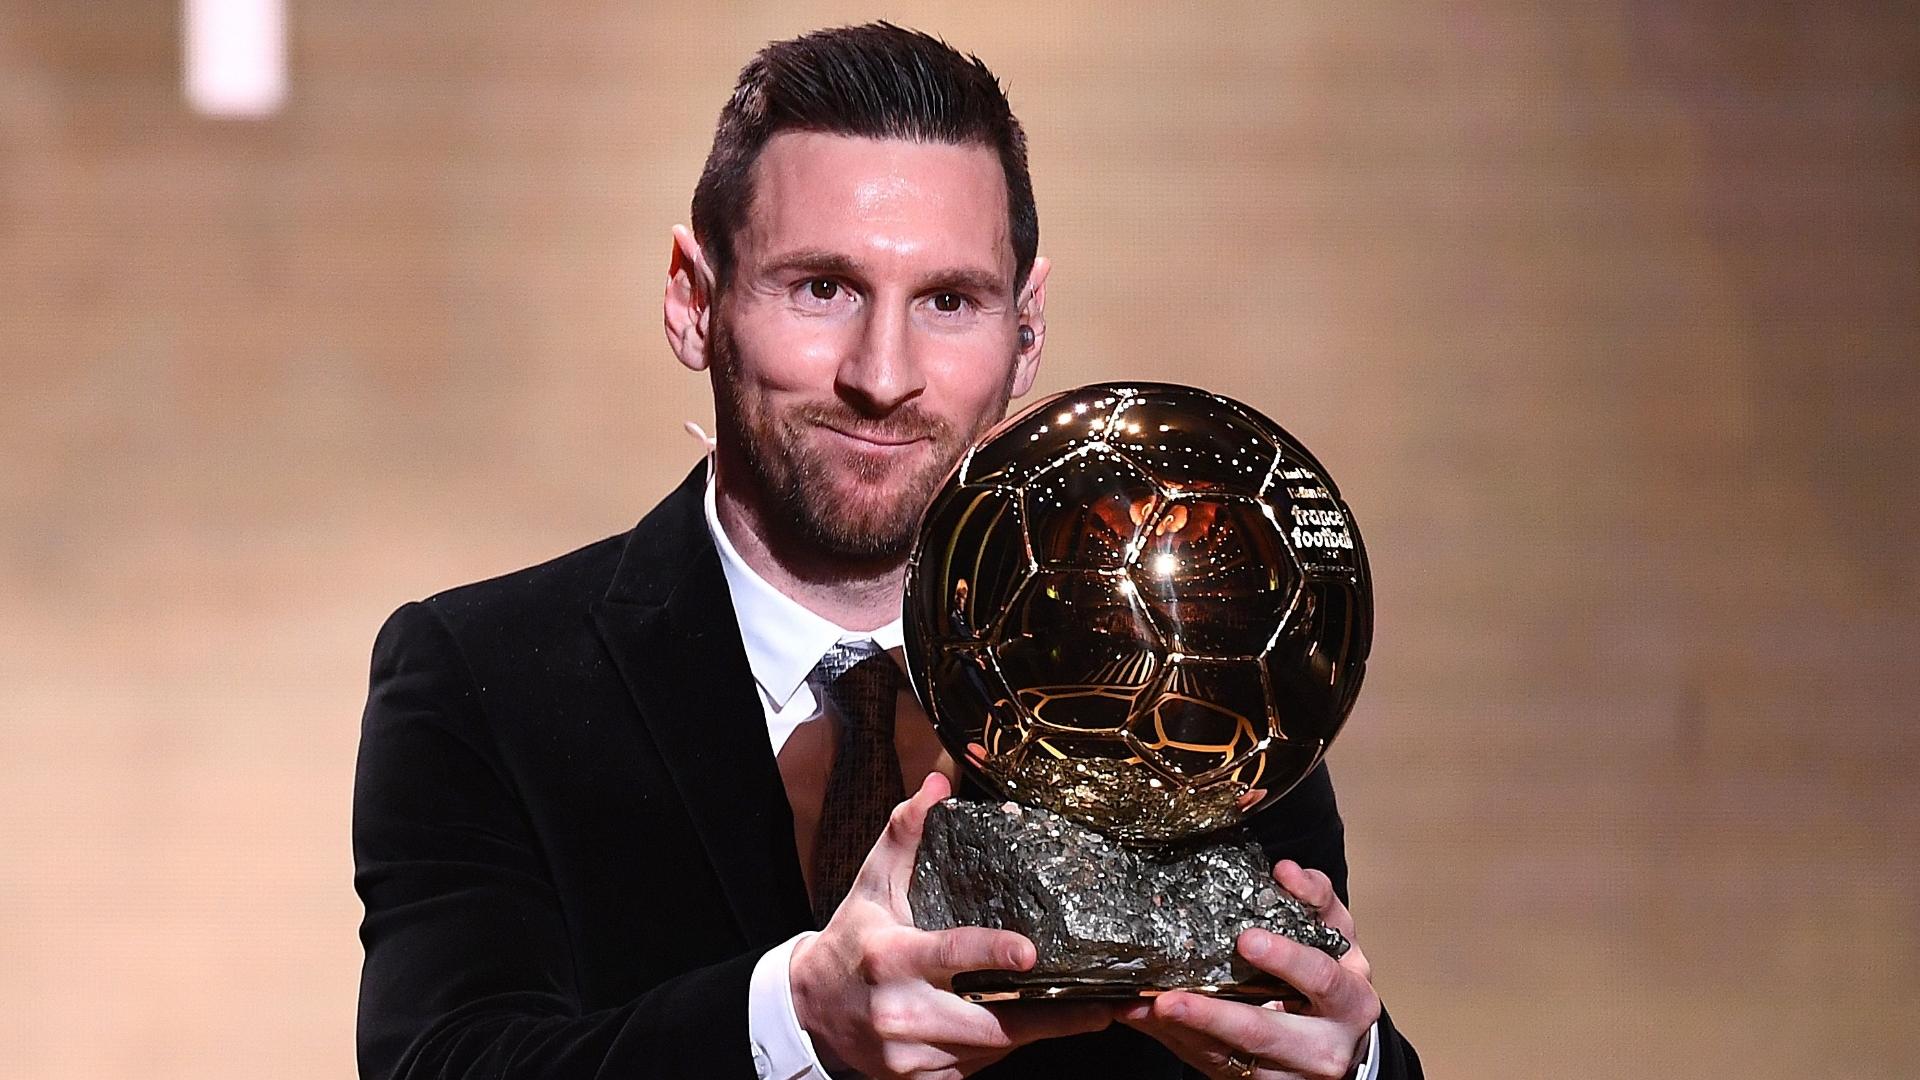 RTP Desporto đã đăng những thông tin mới nhất về quả bóng vàng và siêu sao Messi. Hãy truy cập và xem những chi tiết thú vị về giải thưởng và những thành tích nổi bật của Messi trong suốt sự nghiệp của mình.